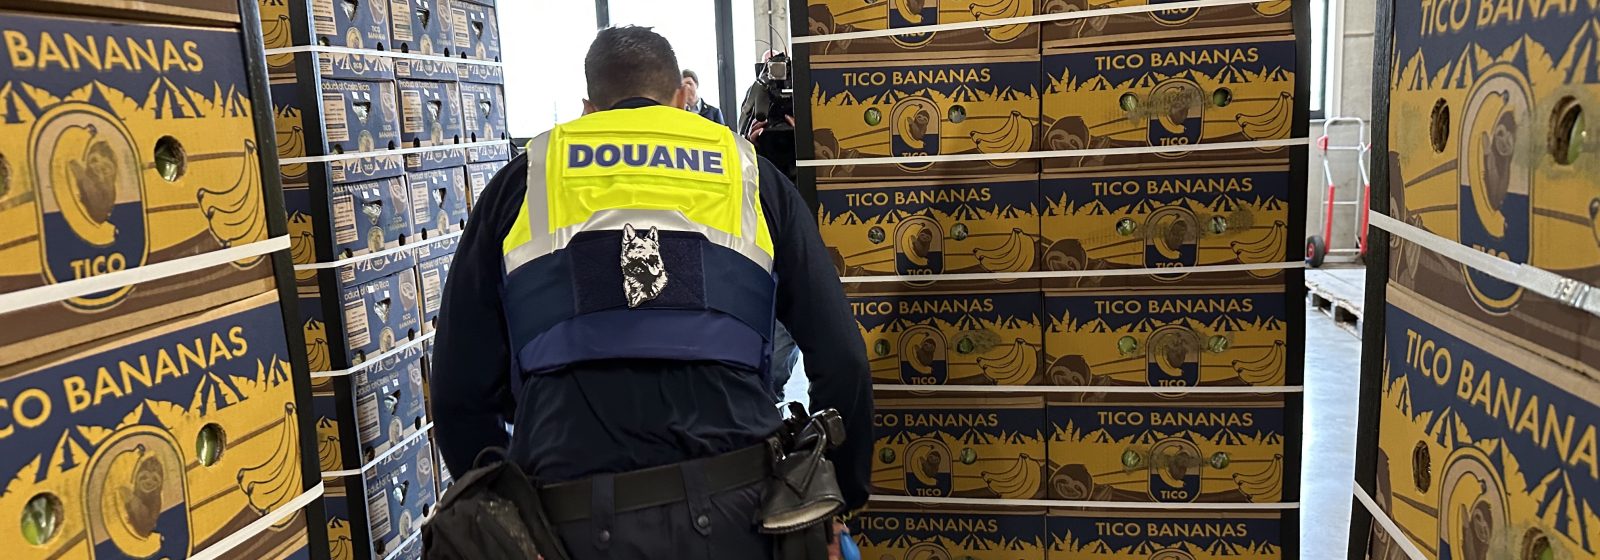 Douane zoekt naar cocaïne tussen bananen